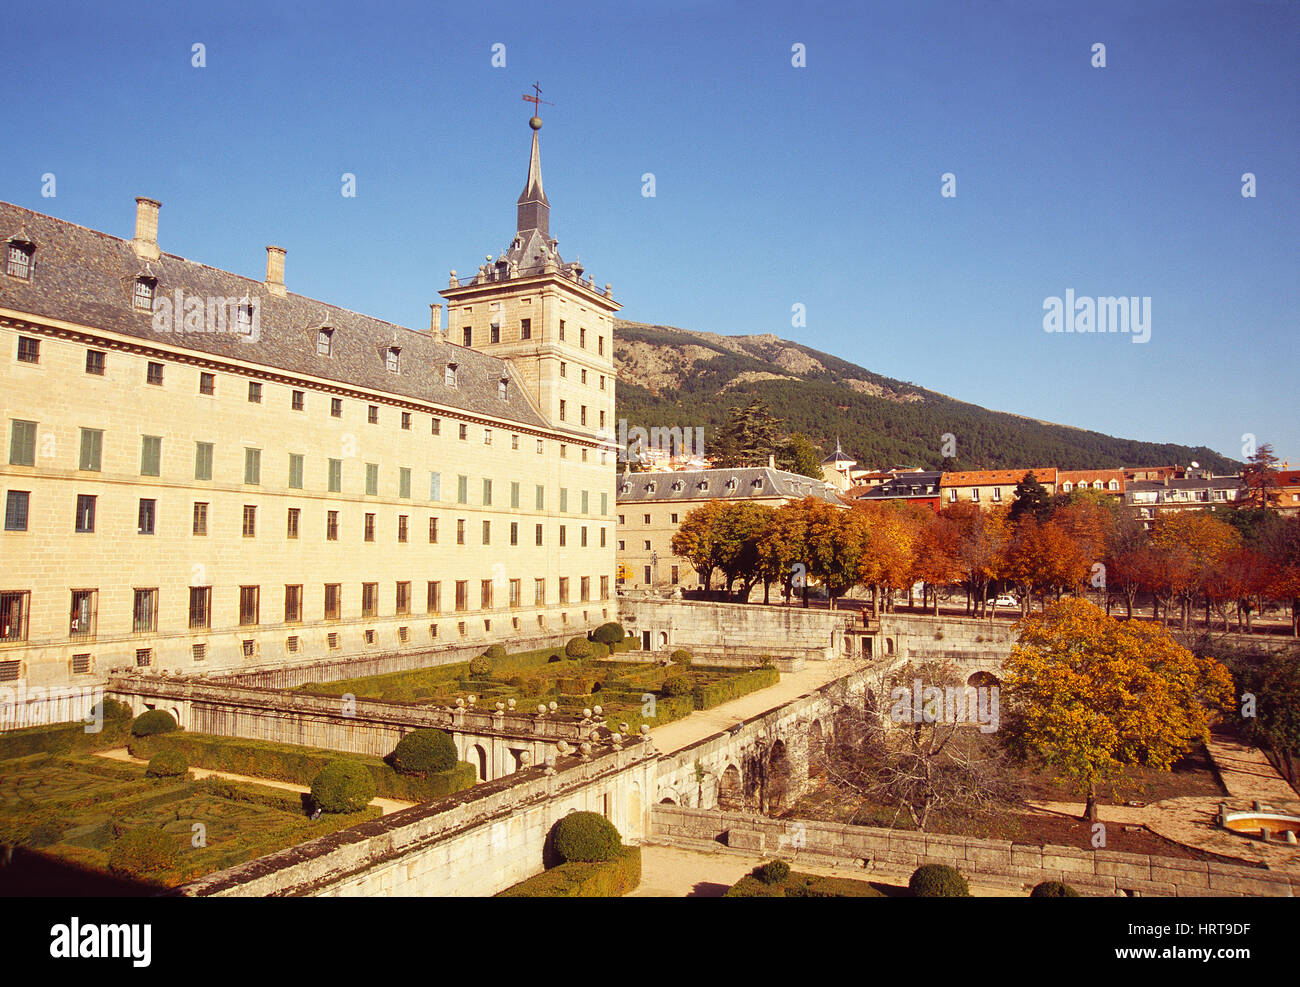 Königliche Kloster und Blick auf das Dorf. San Lorenzo del Escorial, Madrid-Segovia, Spanien. Stockfoto